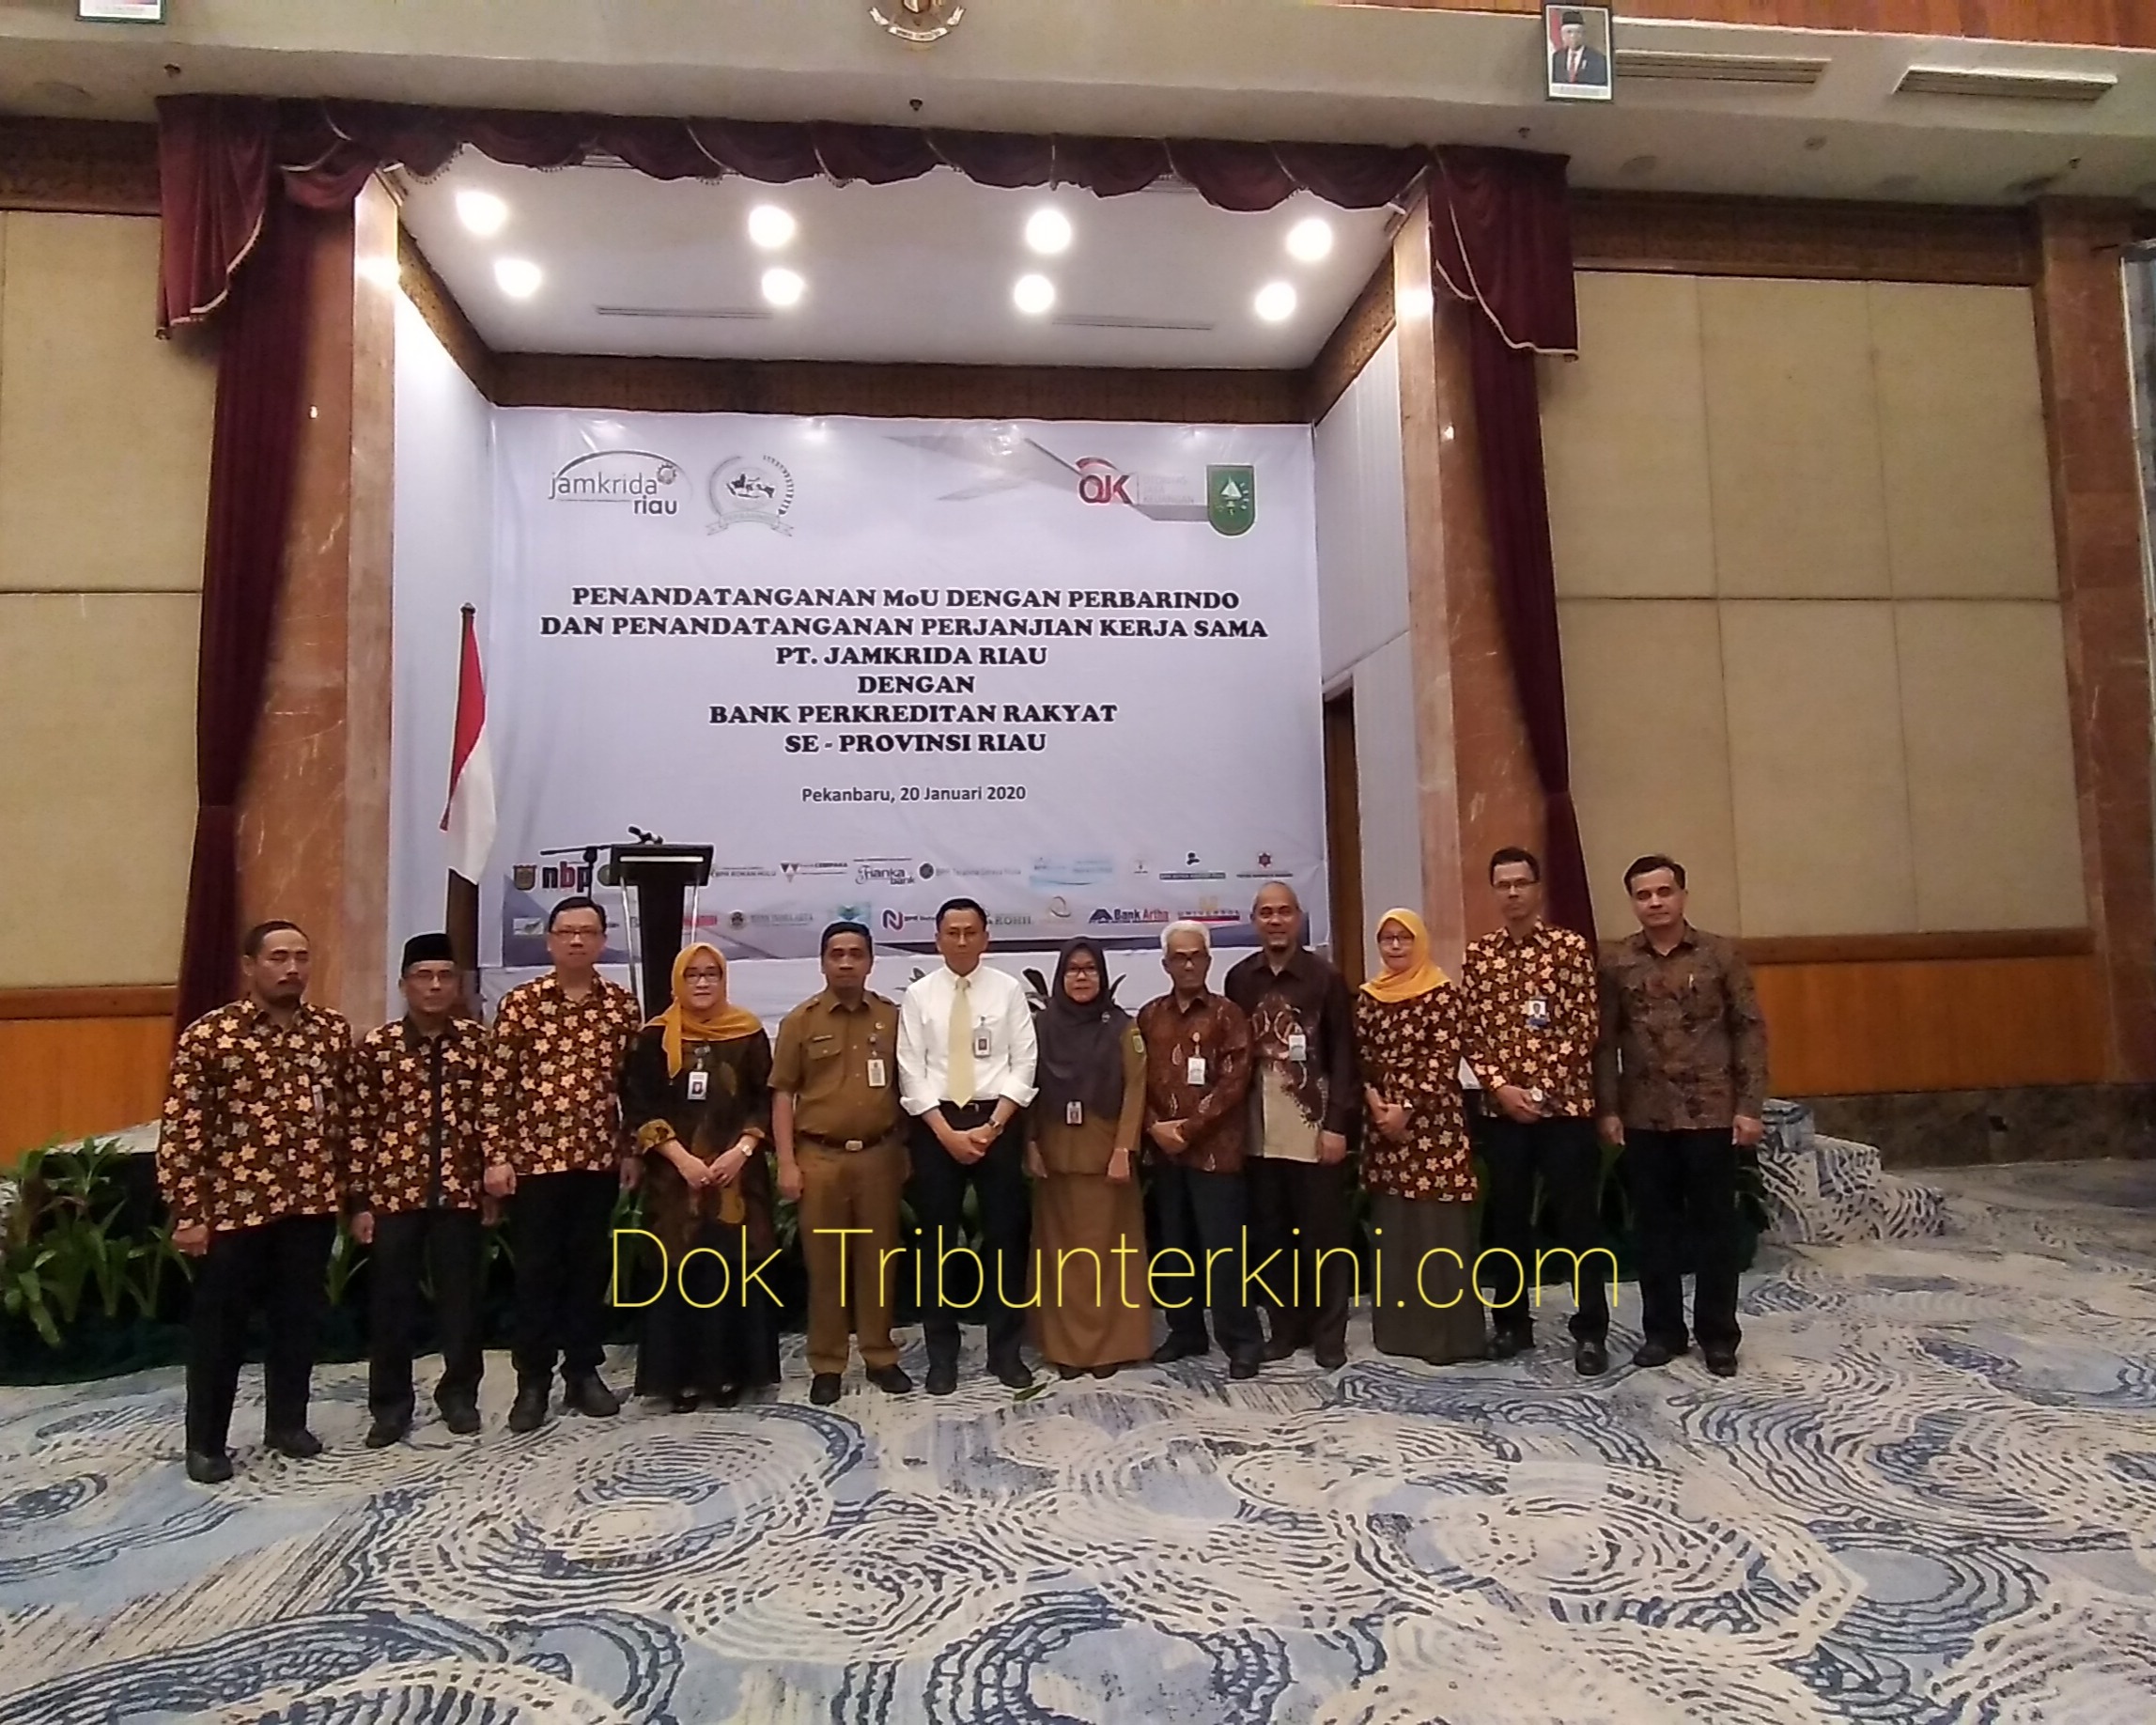 Penandatanganan MoU Dengan Perbarindo dan Perjanjian Kerjasama antara PT. Jamkrida Riau dengan BPR Se Provinsi Riau